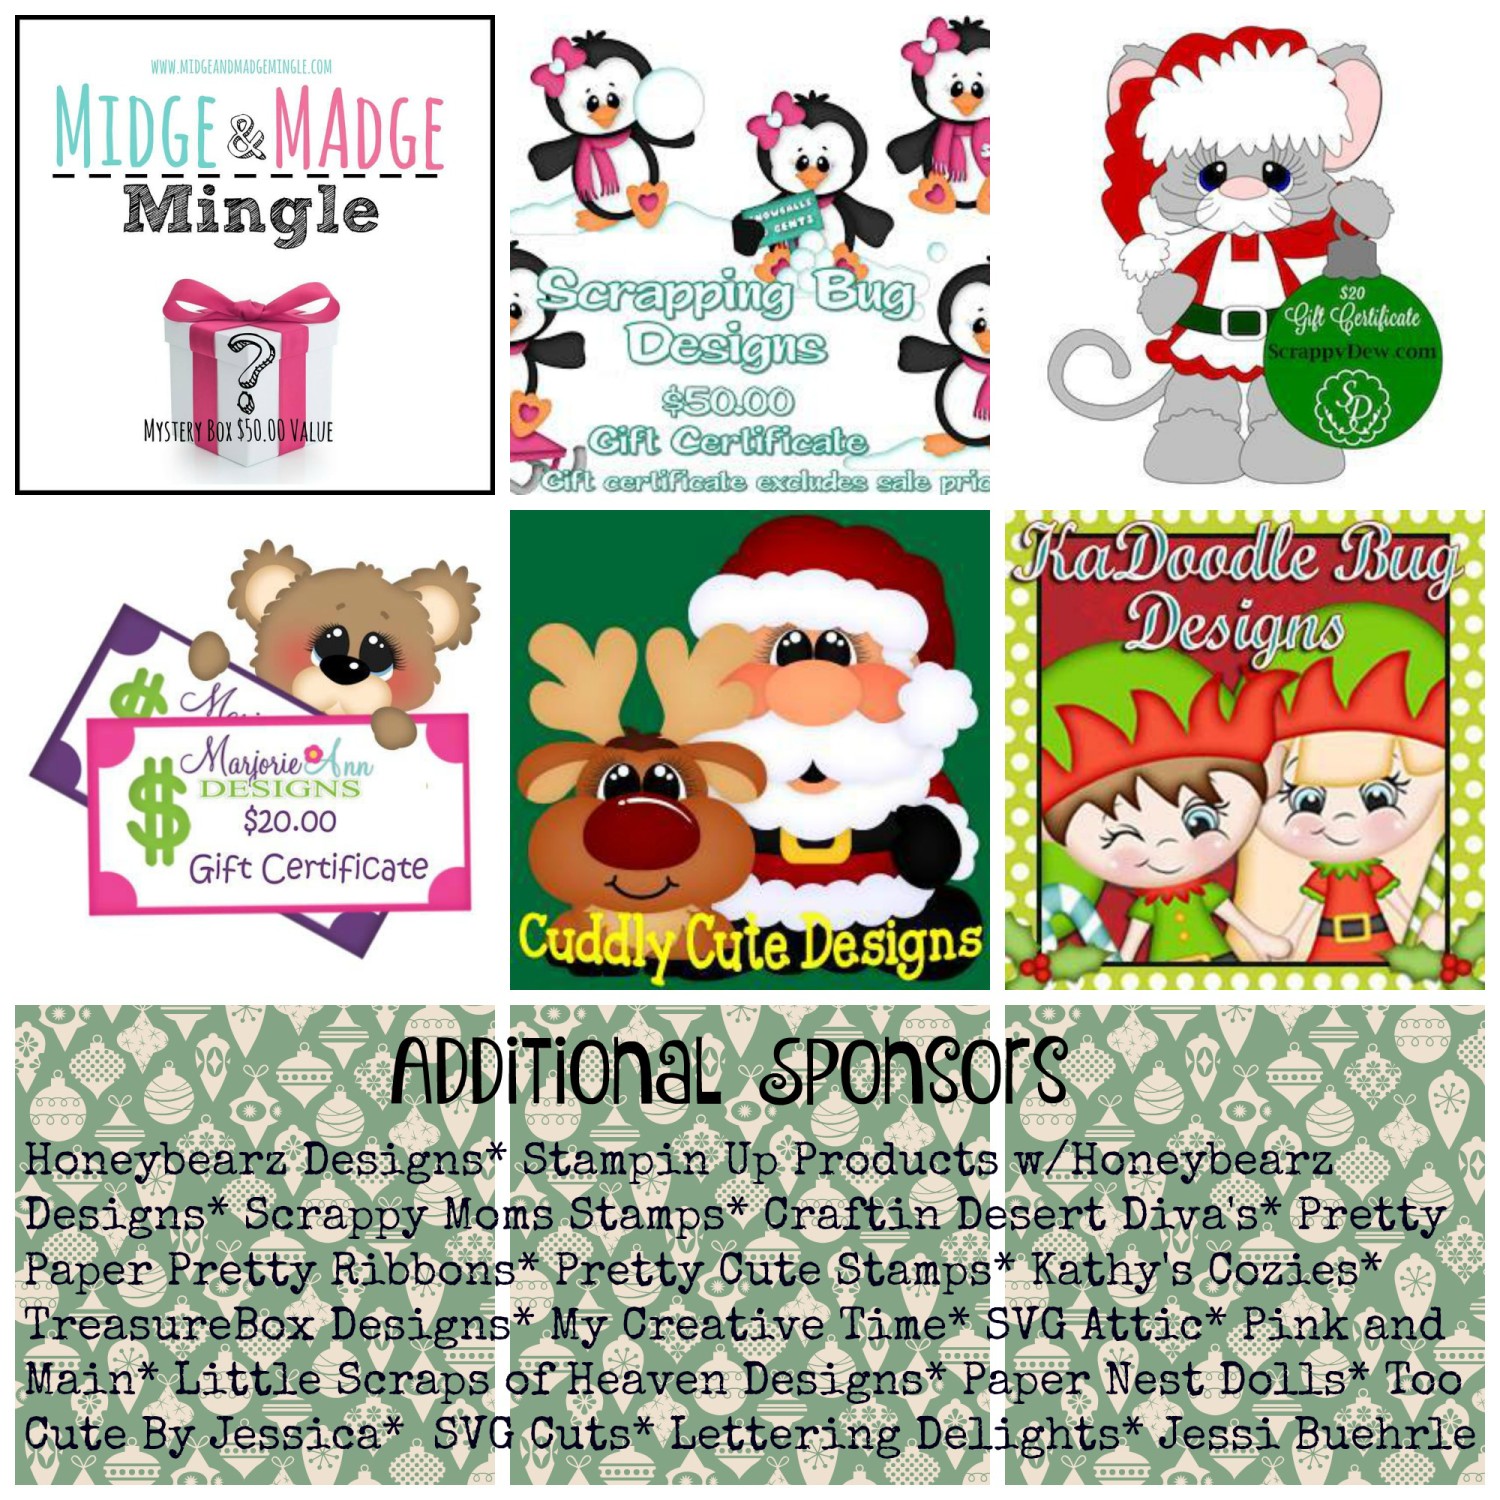 12 Days of Christmas Blog Hop Sponsor 2015